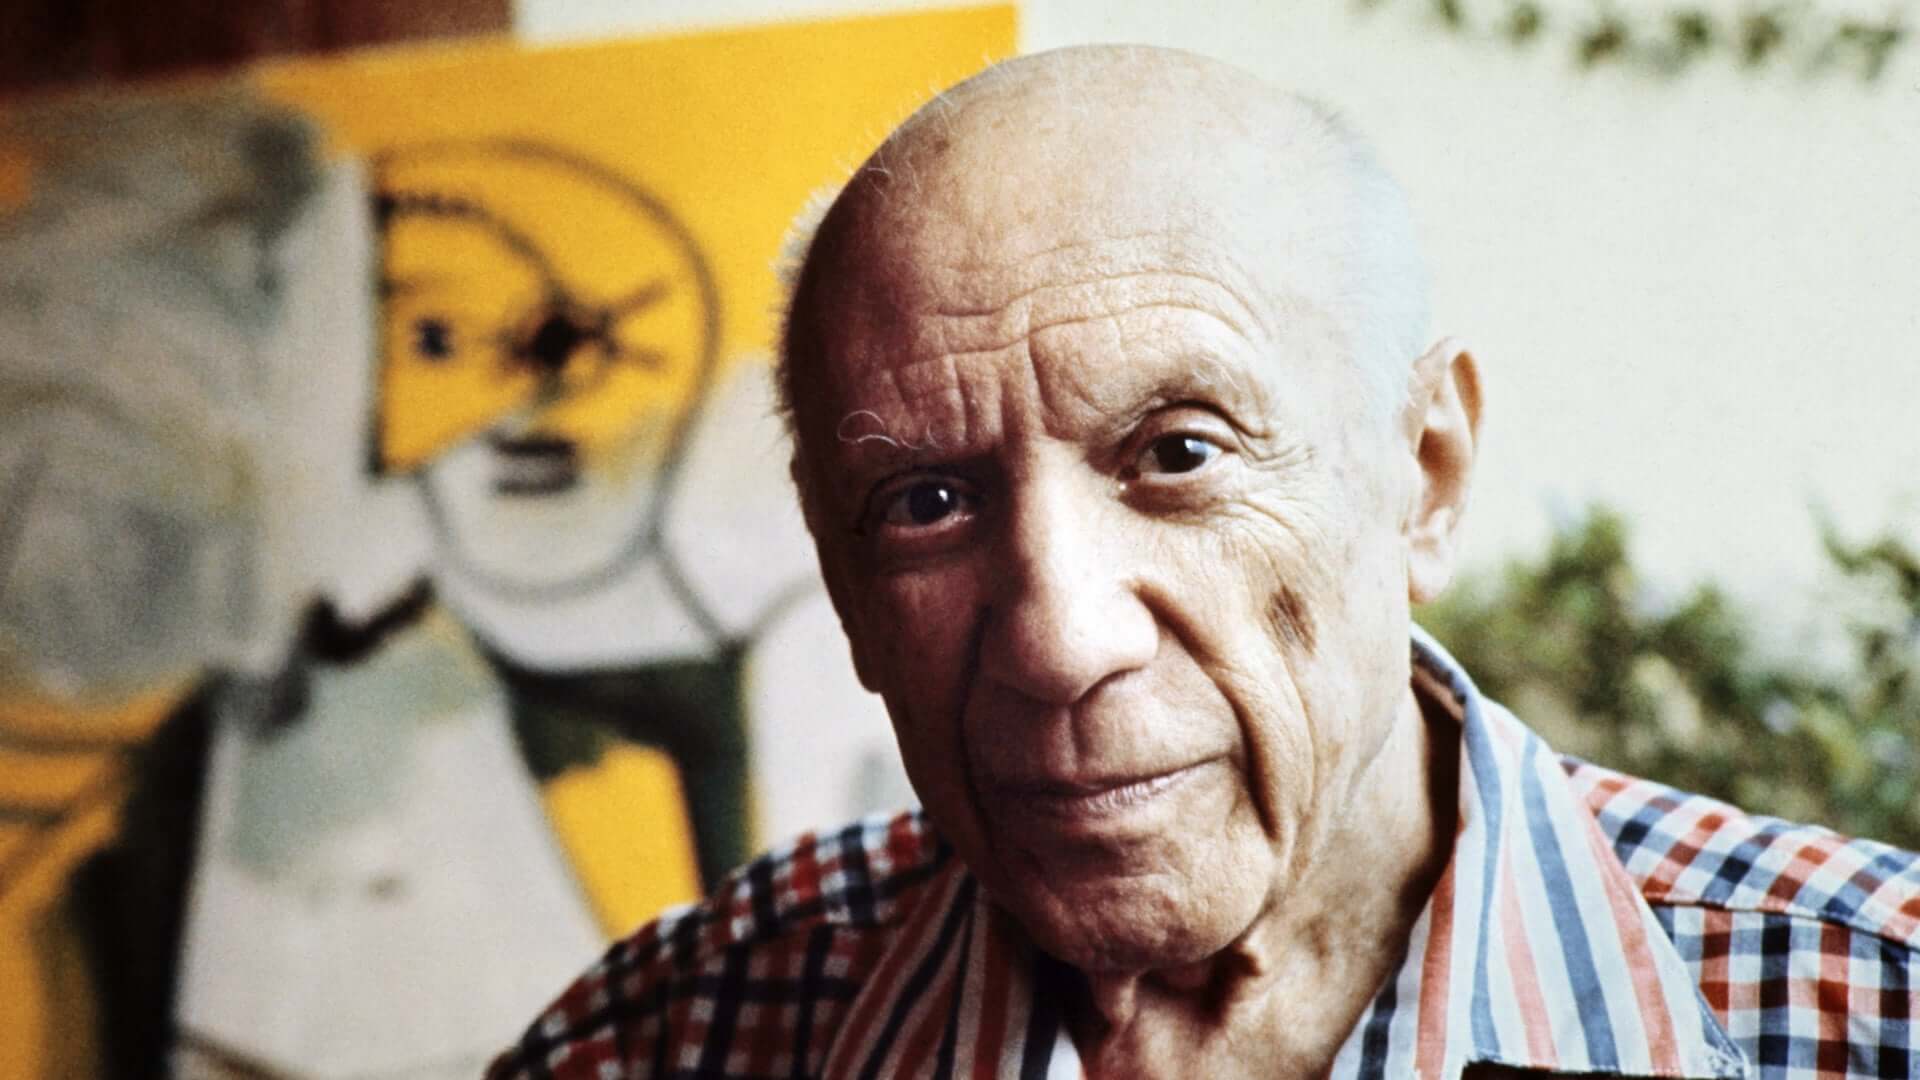 Pablo Picasso portrait